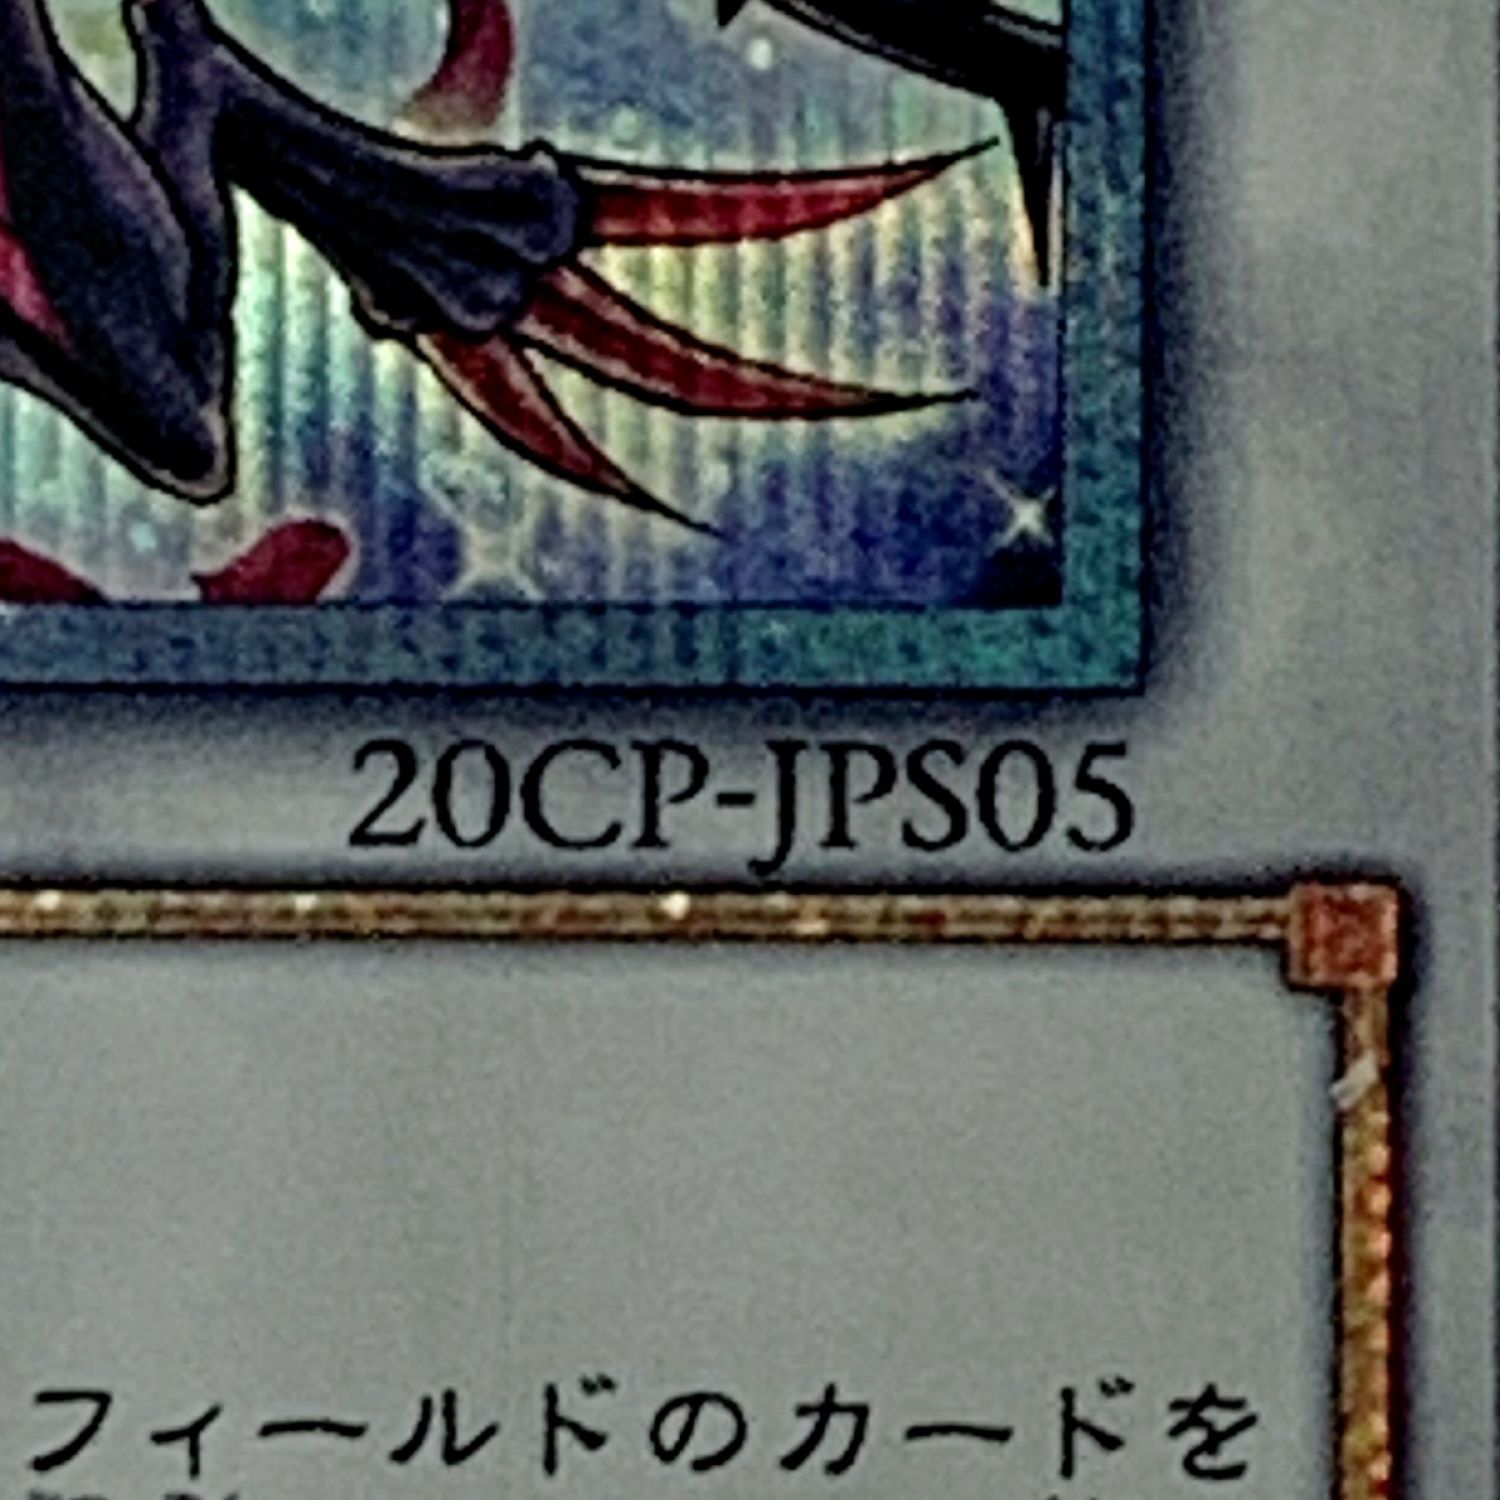 トレカ 遊戯王 20CP-JPS05 ブラック・ローズ・ドラゴン 20thシークレット